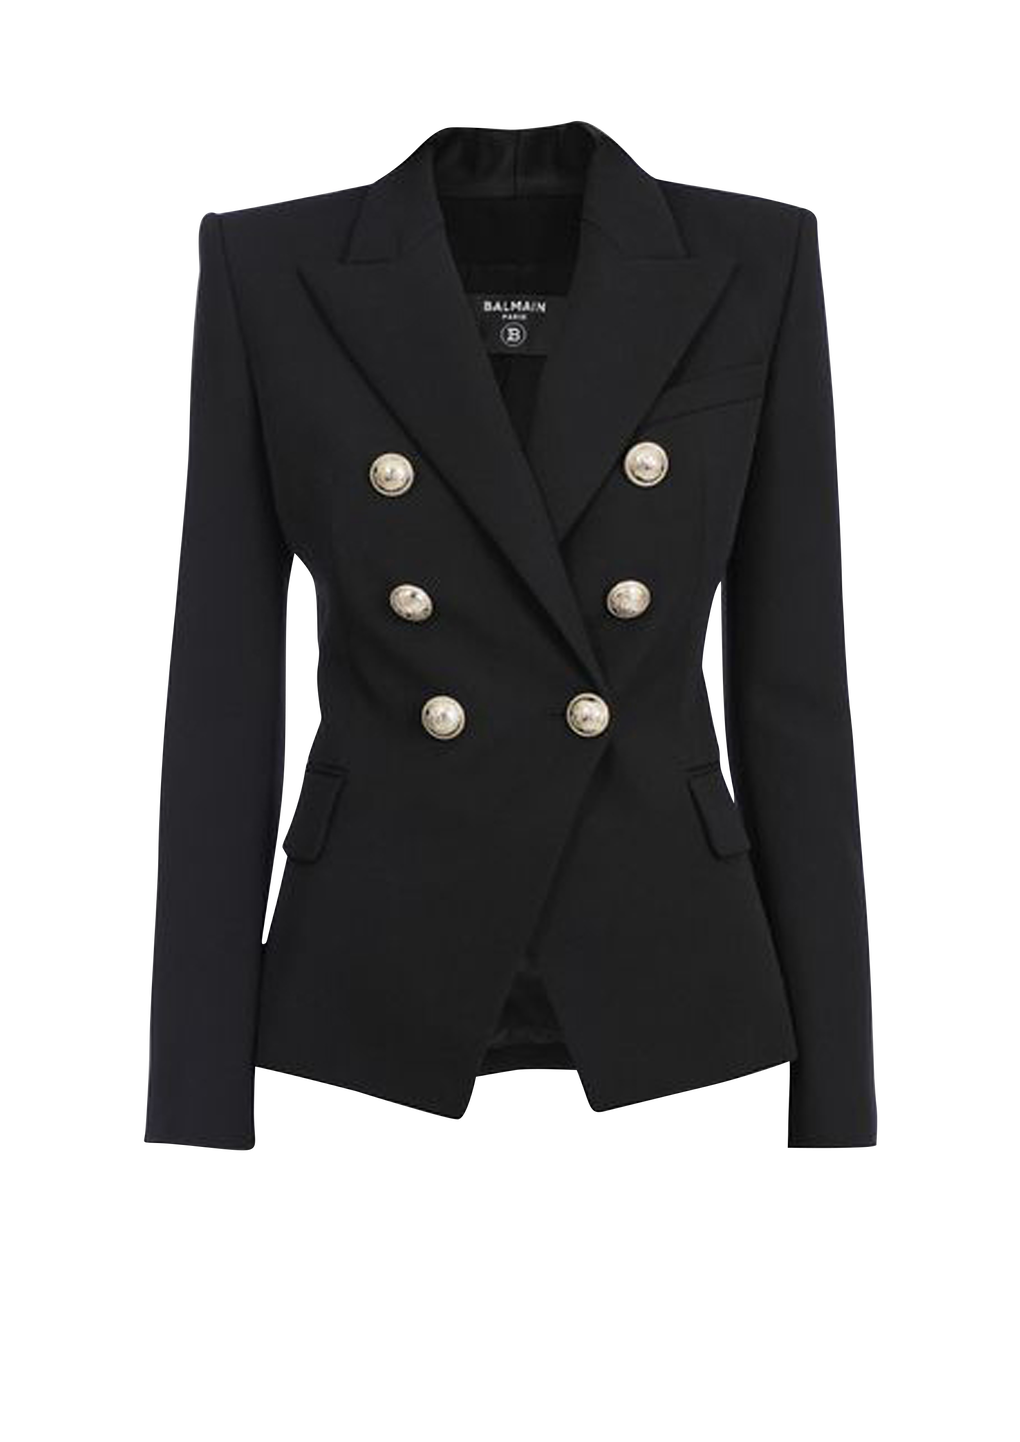 Grain de poudre double-breasted jacket, black, hi-res